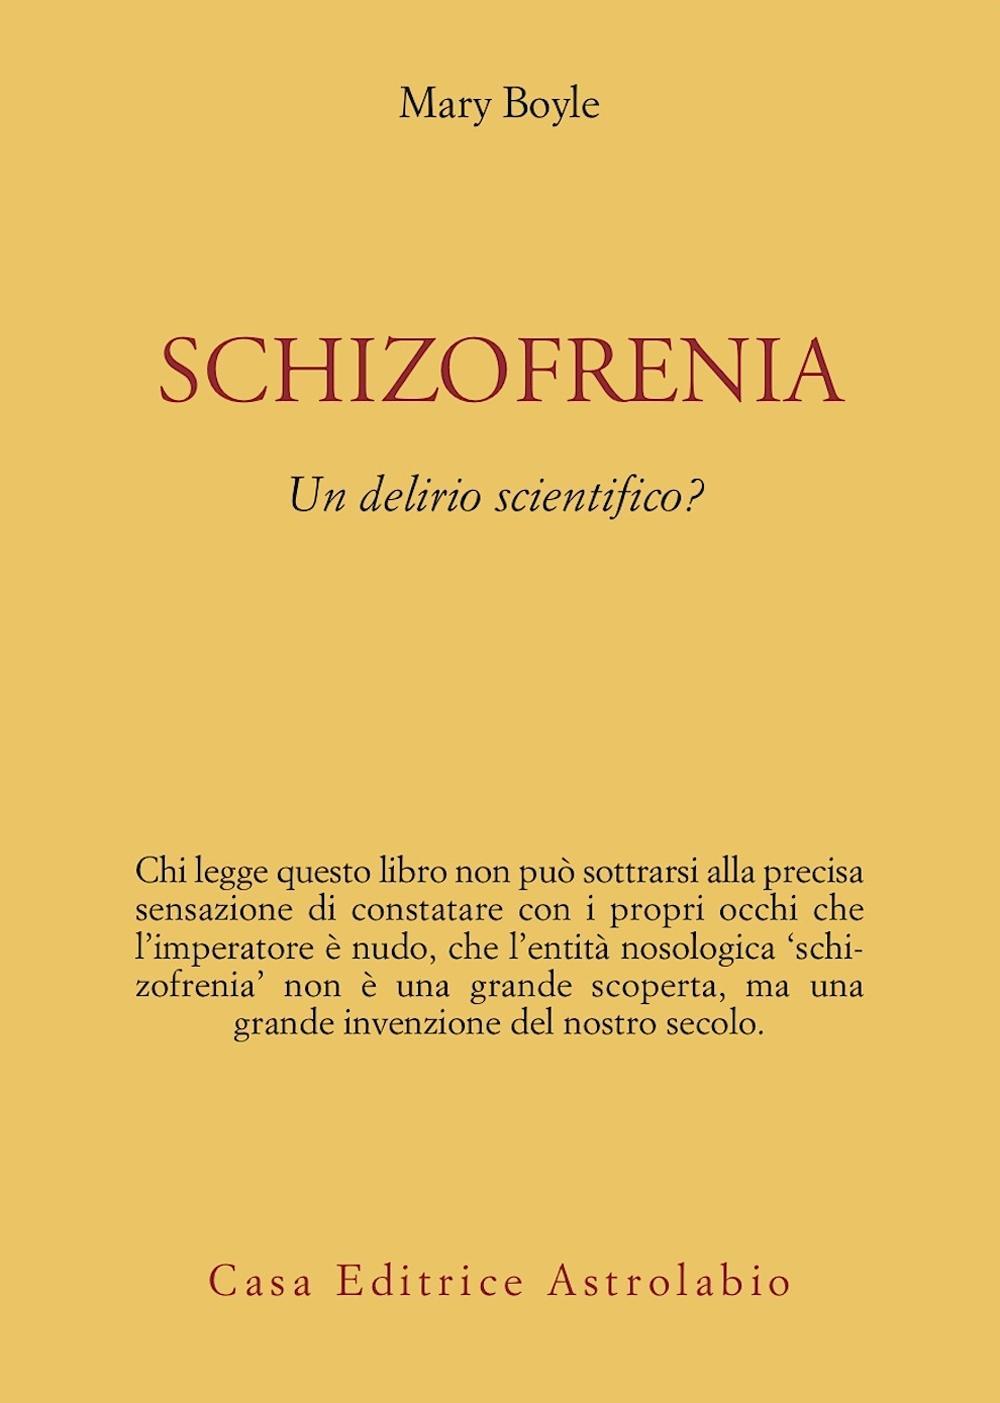 Schizofrenia: un delirio scientifico?